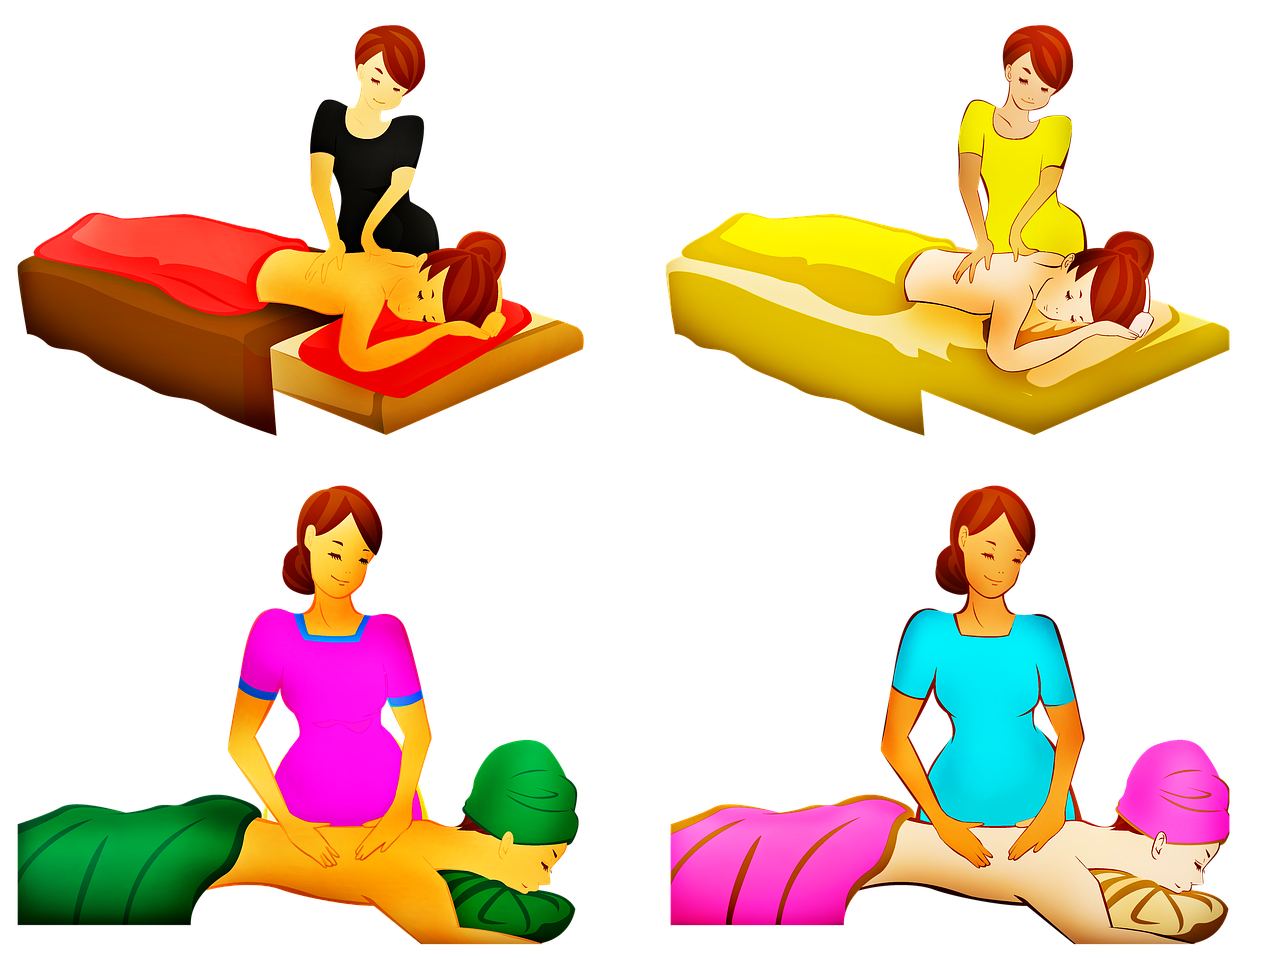 massage therapist  massage  therapy free photo